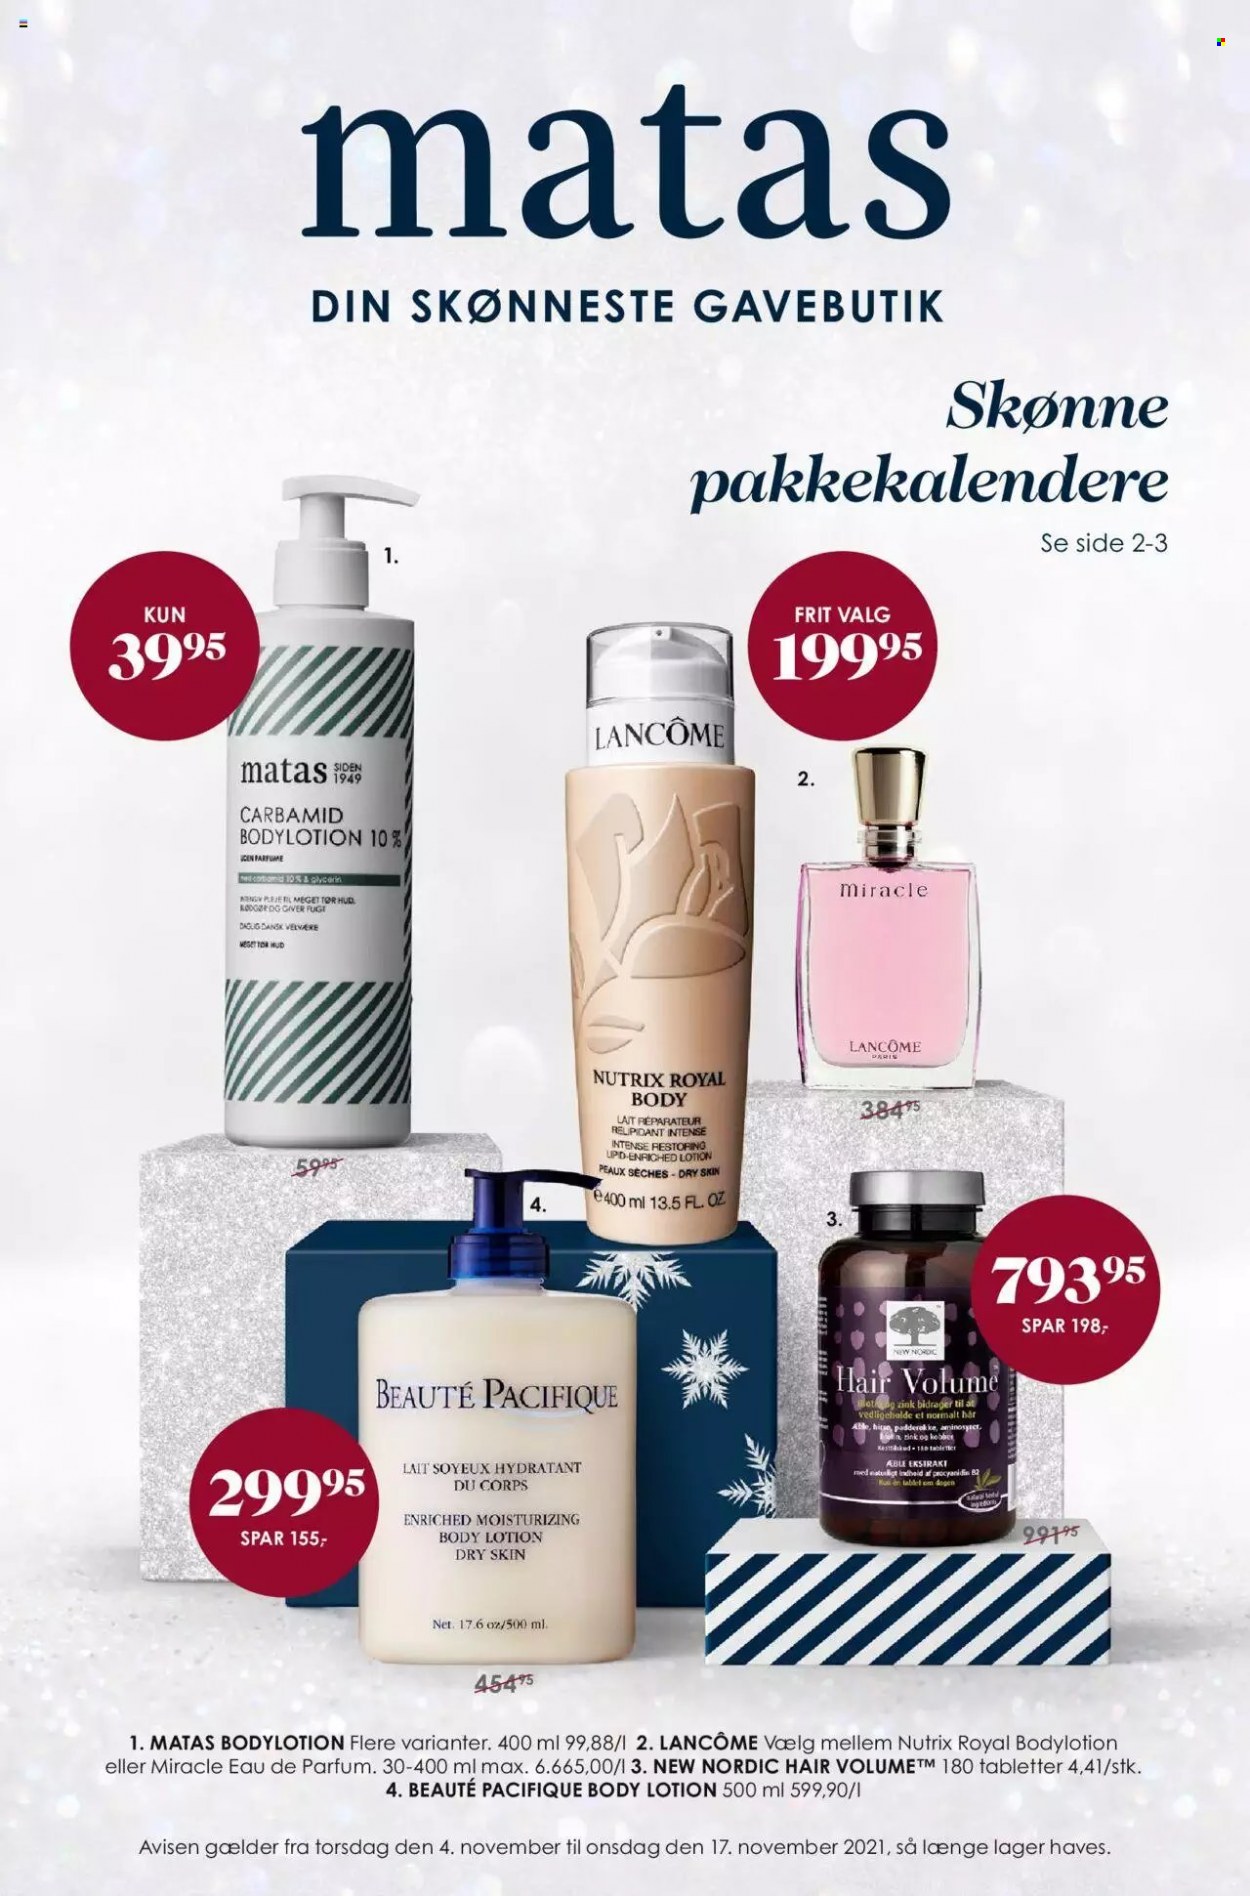 thumbnail - Matas tilbud  - 4.11.2021 - 17.11.2021 - tilbudsprodukter - Beaute Pacifique, Lancôme, body lotion, eau de parfum. Side 1.